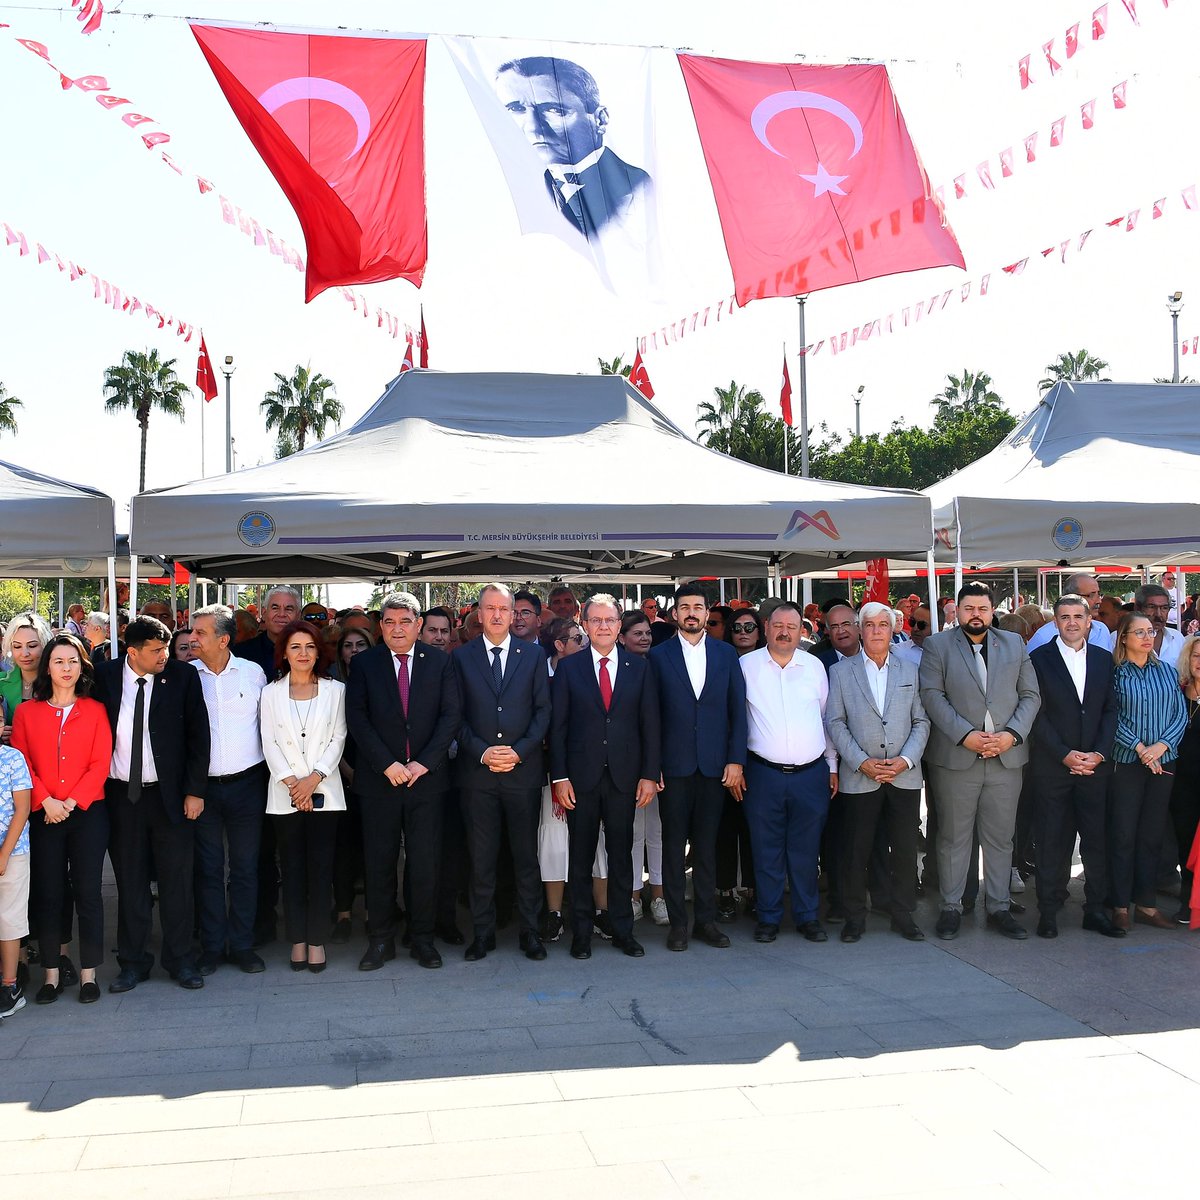 “Benim iki büyük eserim var. Türkiye Cumhuriyeti ve Cumhuriyet Halk Partisi’dir.” Ulu Önderimiz Mustafa Kemal Atatürk’ün eserinden biri olan partimizin kutlamalarına katıldım. Cumhuriyetimizin ikinci yüzyılını demokrasiyle taçlandıracağız. #YaşasınCumuhuriyet🇹🇷